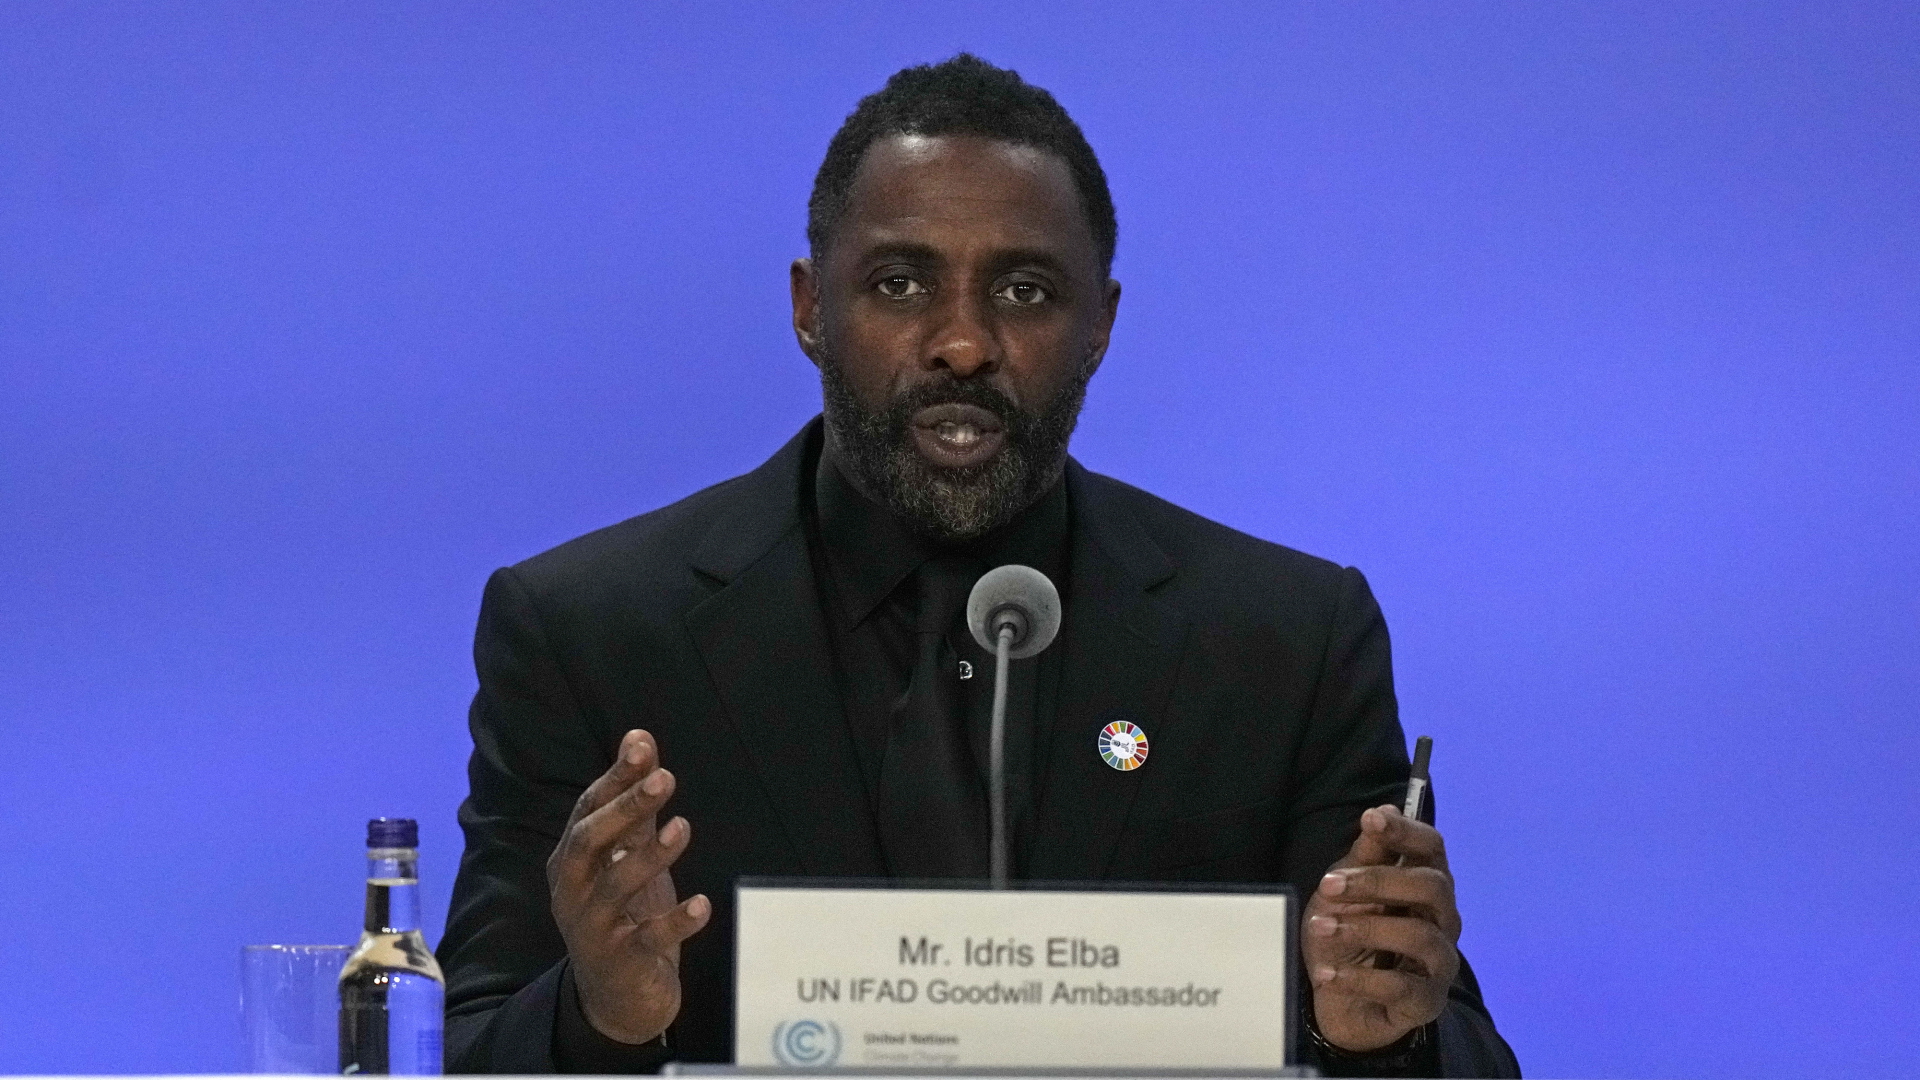  Idris Elba bei seiner Rede in Glasgow | dpa